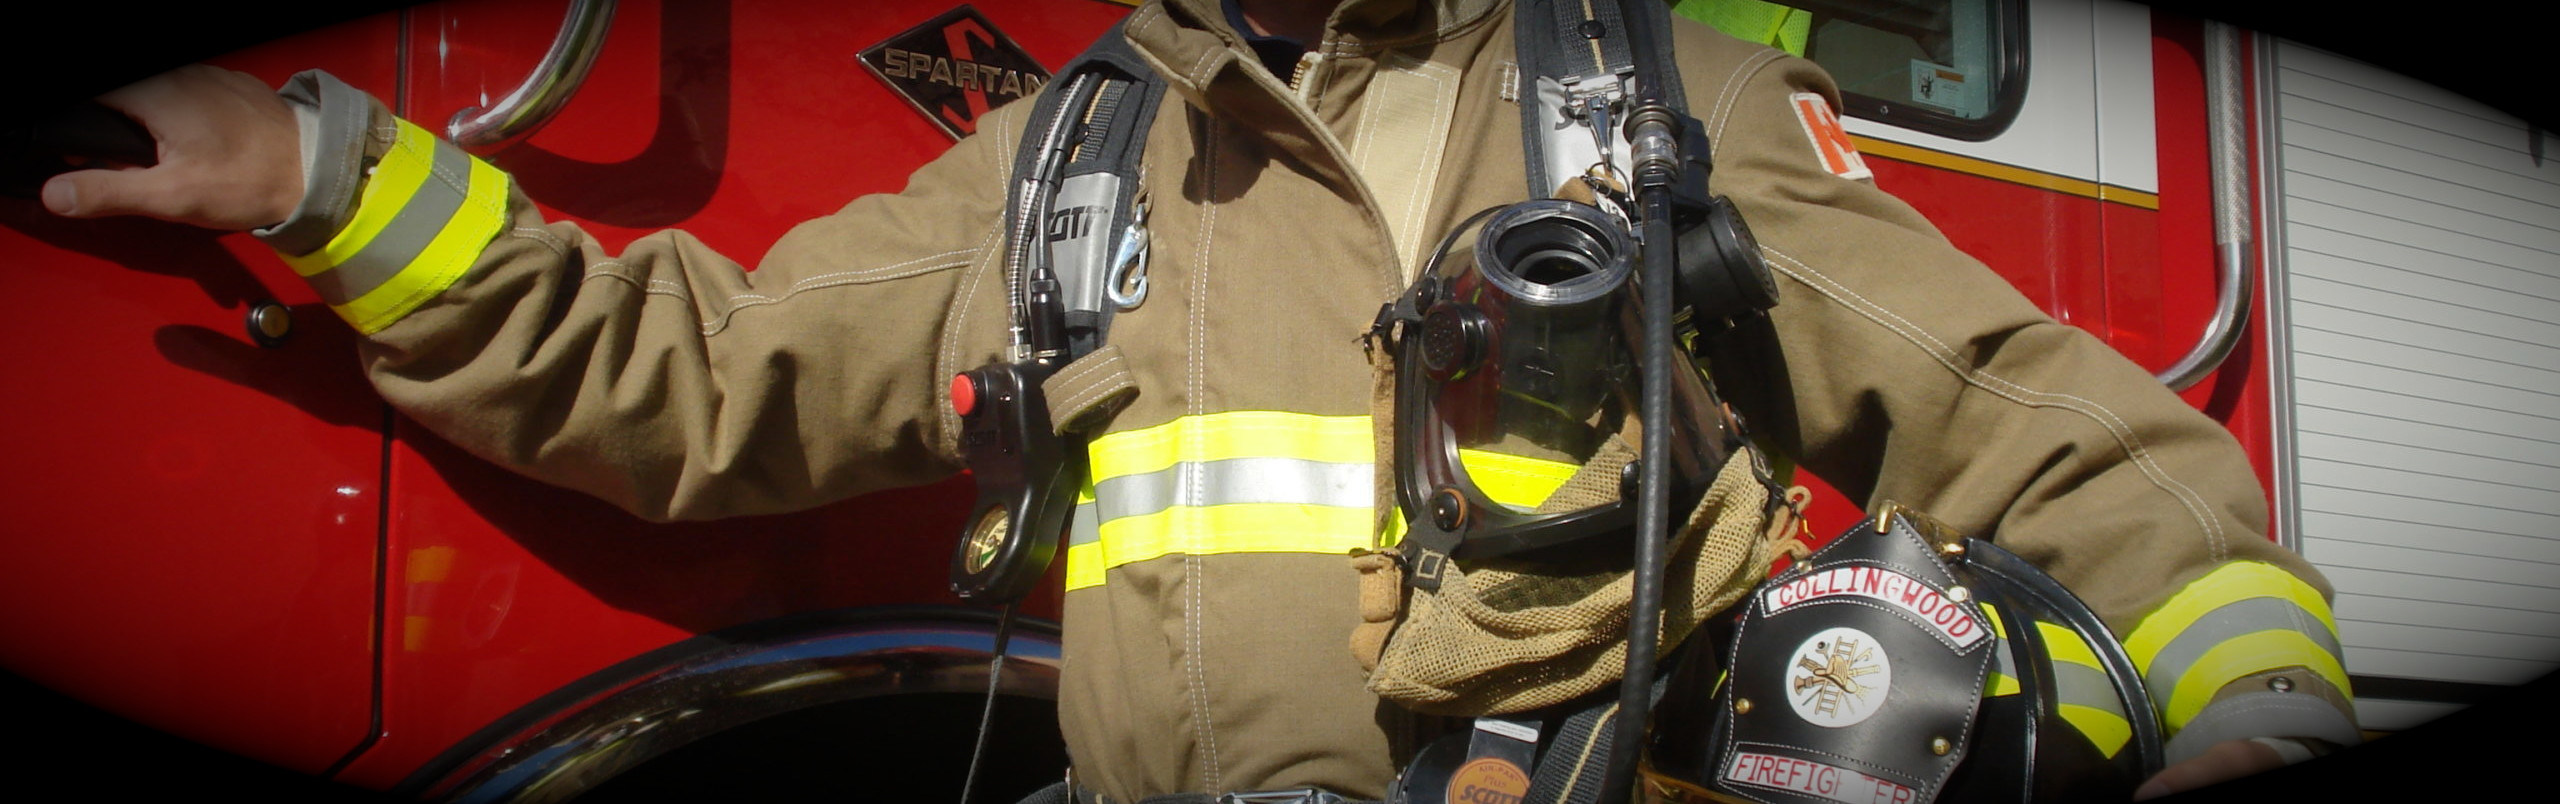 Firefighter with helmet holding door handle of a firetruck